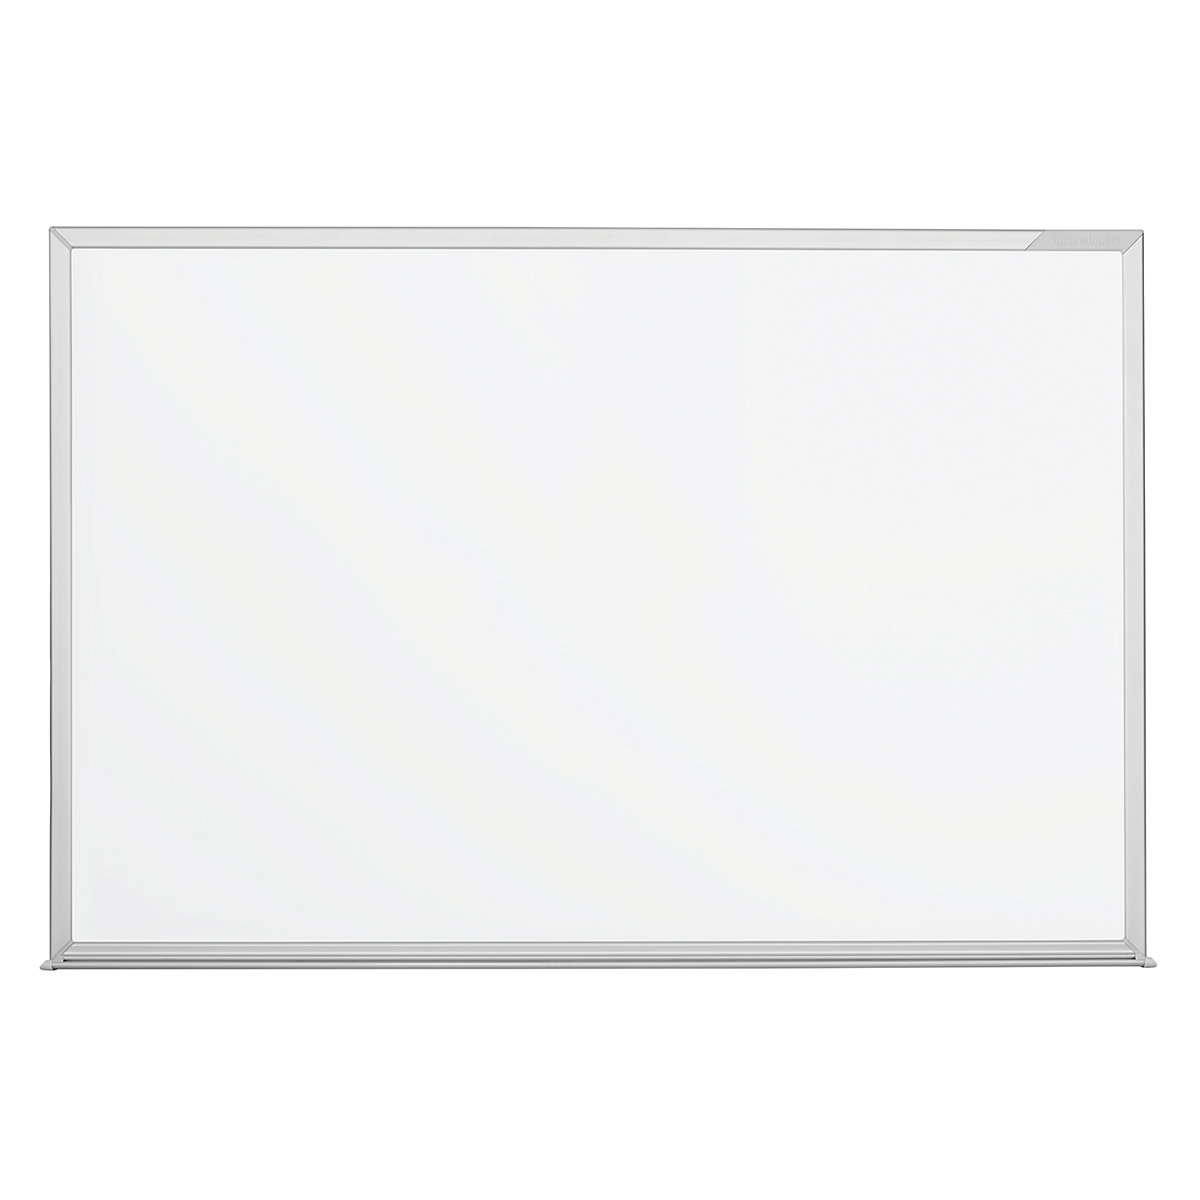 Whiteboard, type CC – magnetoplan: sheet steel, enamel